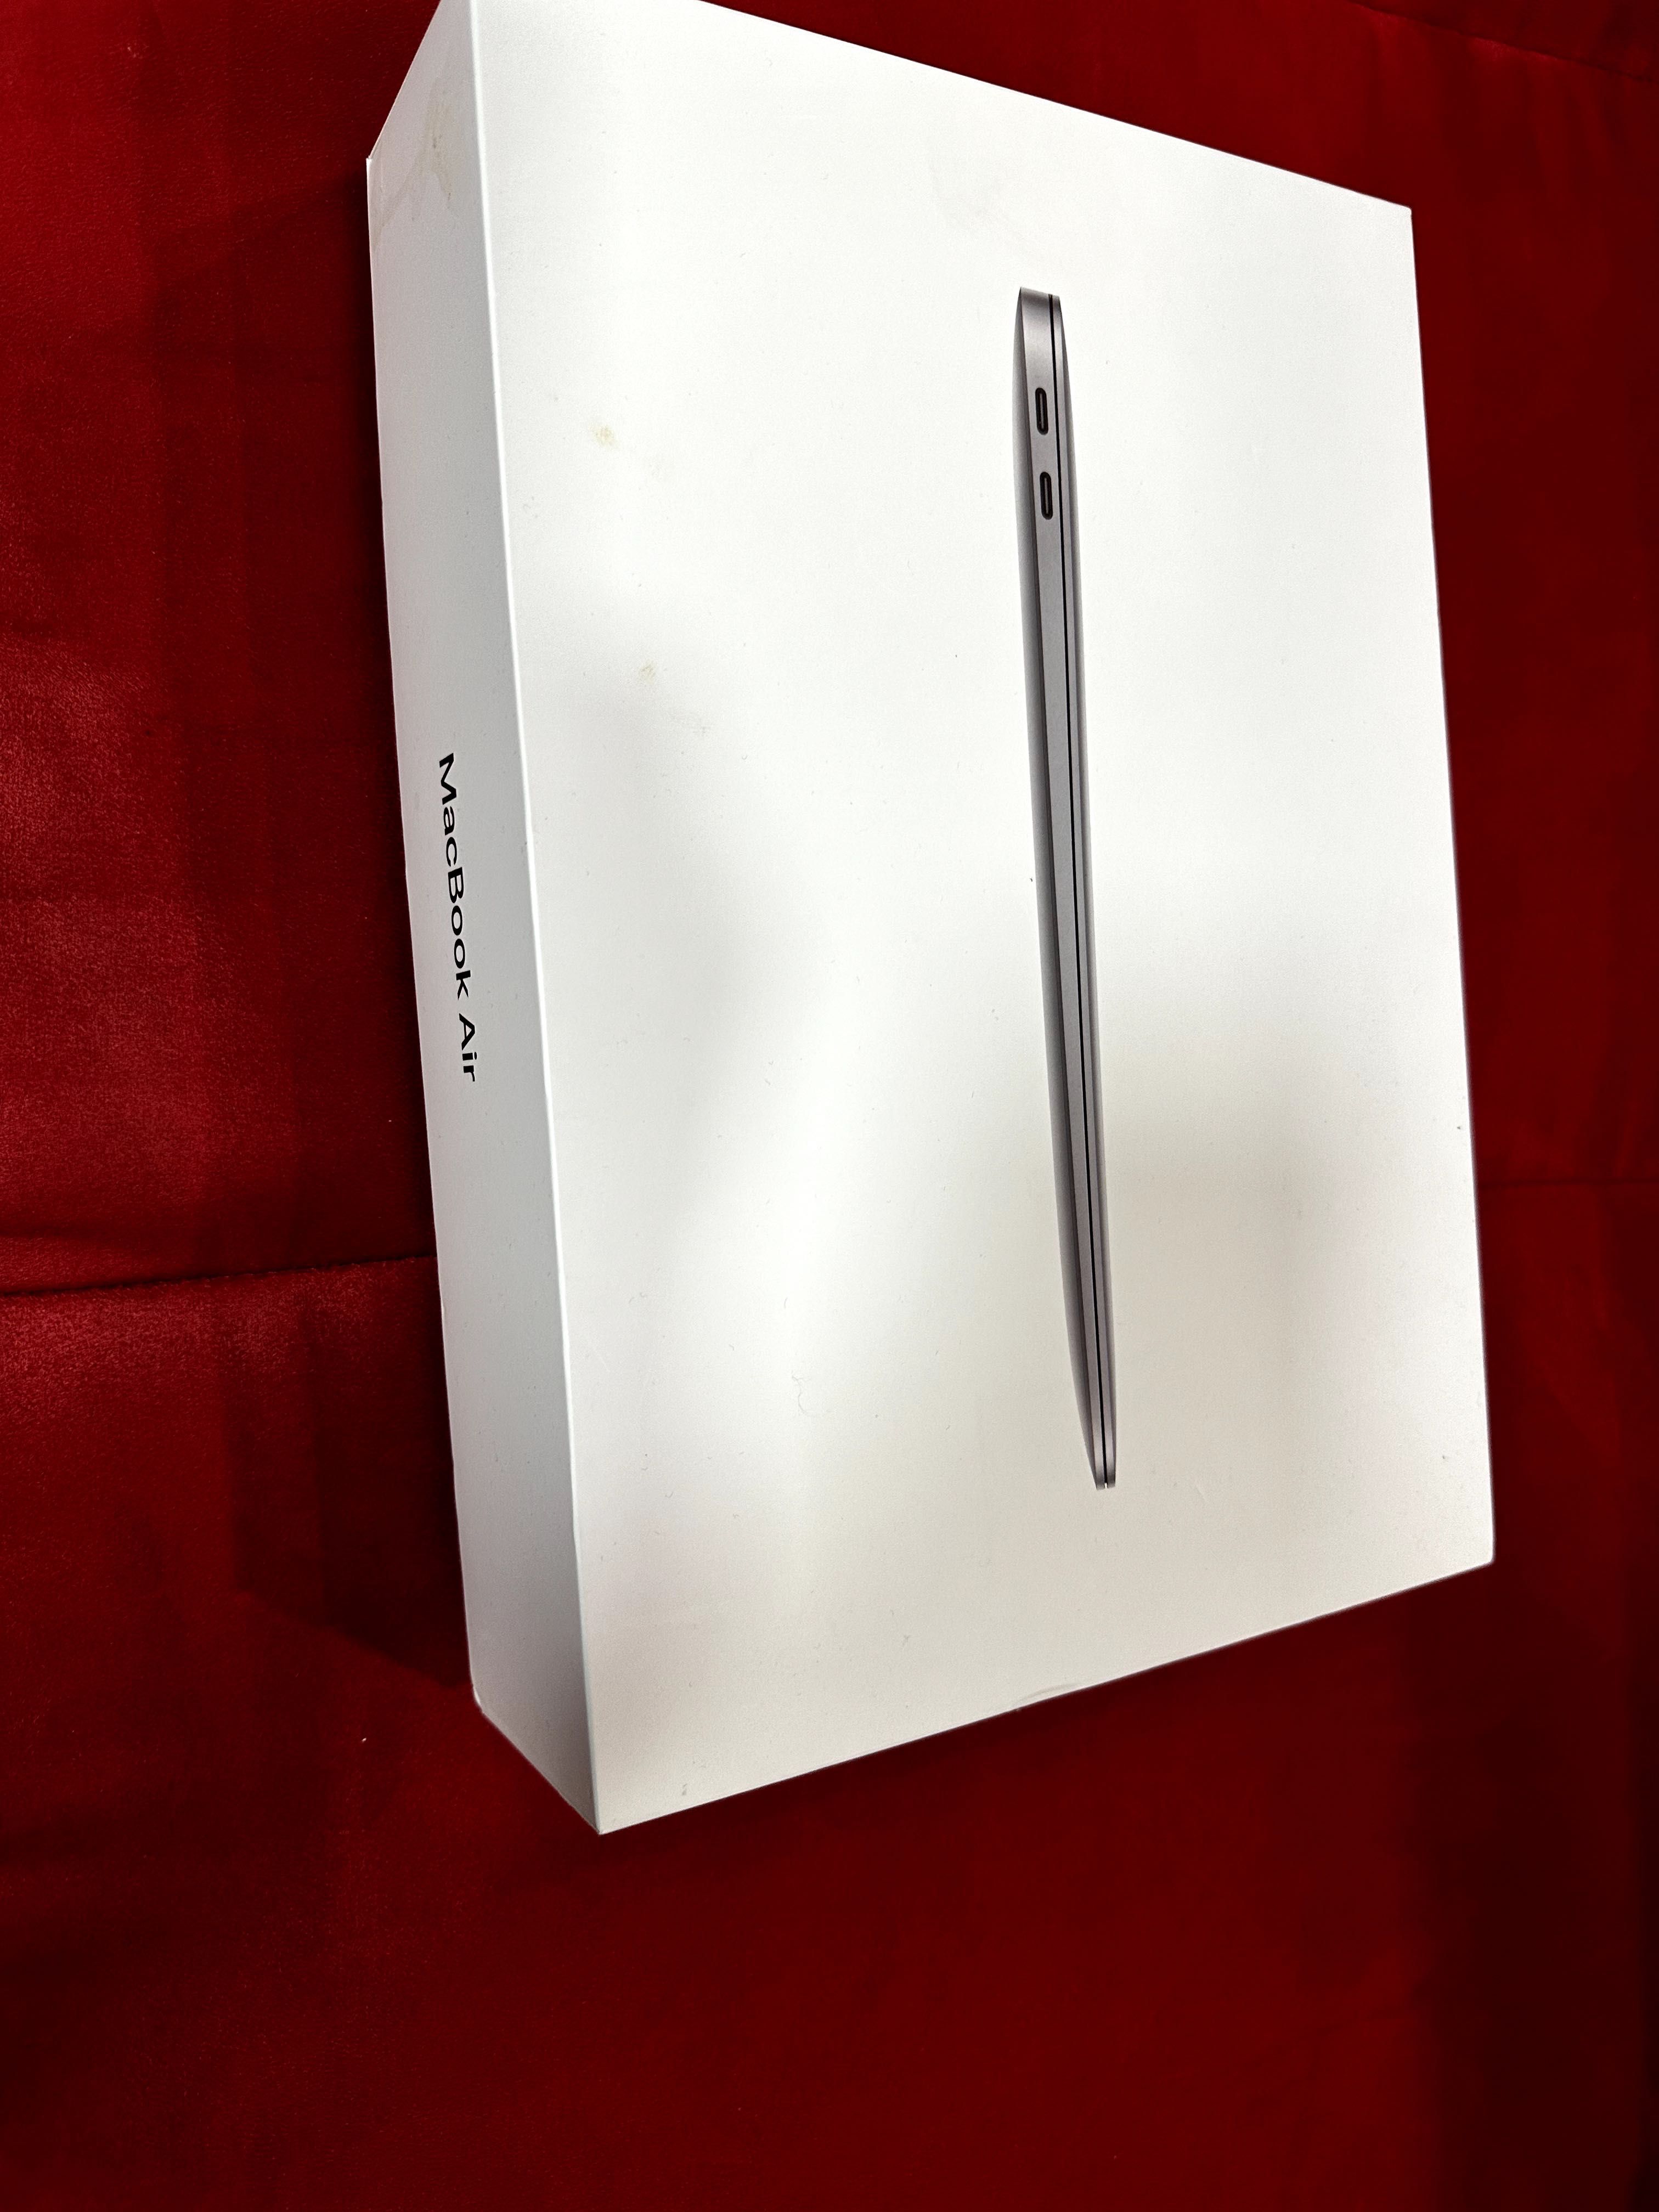 MacBook Air (Retina, 13-inch, 2018)